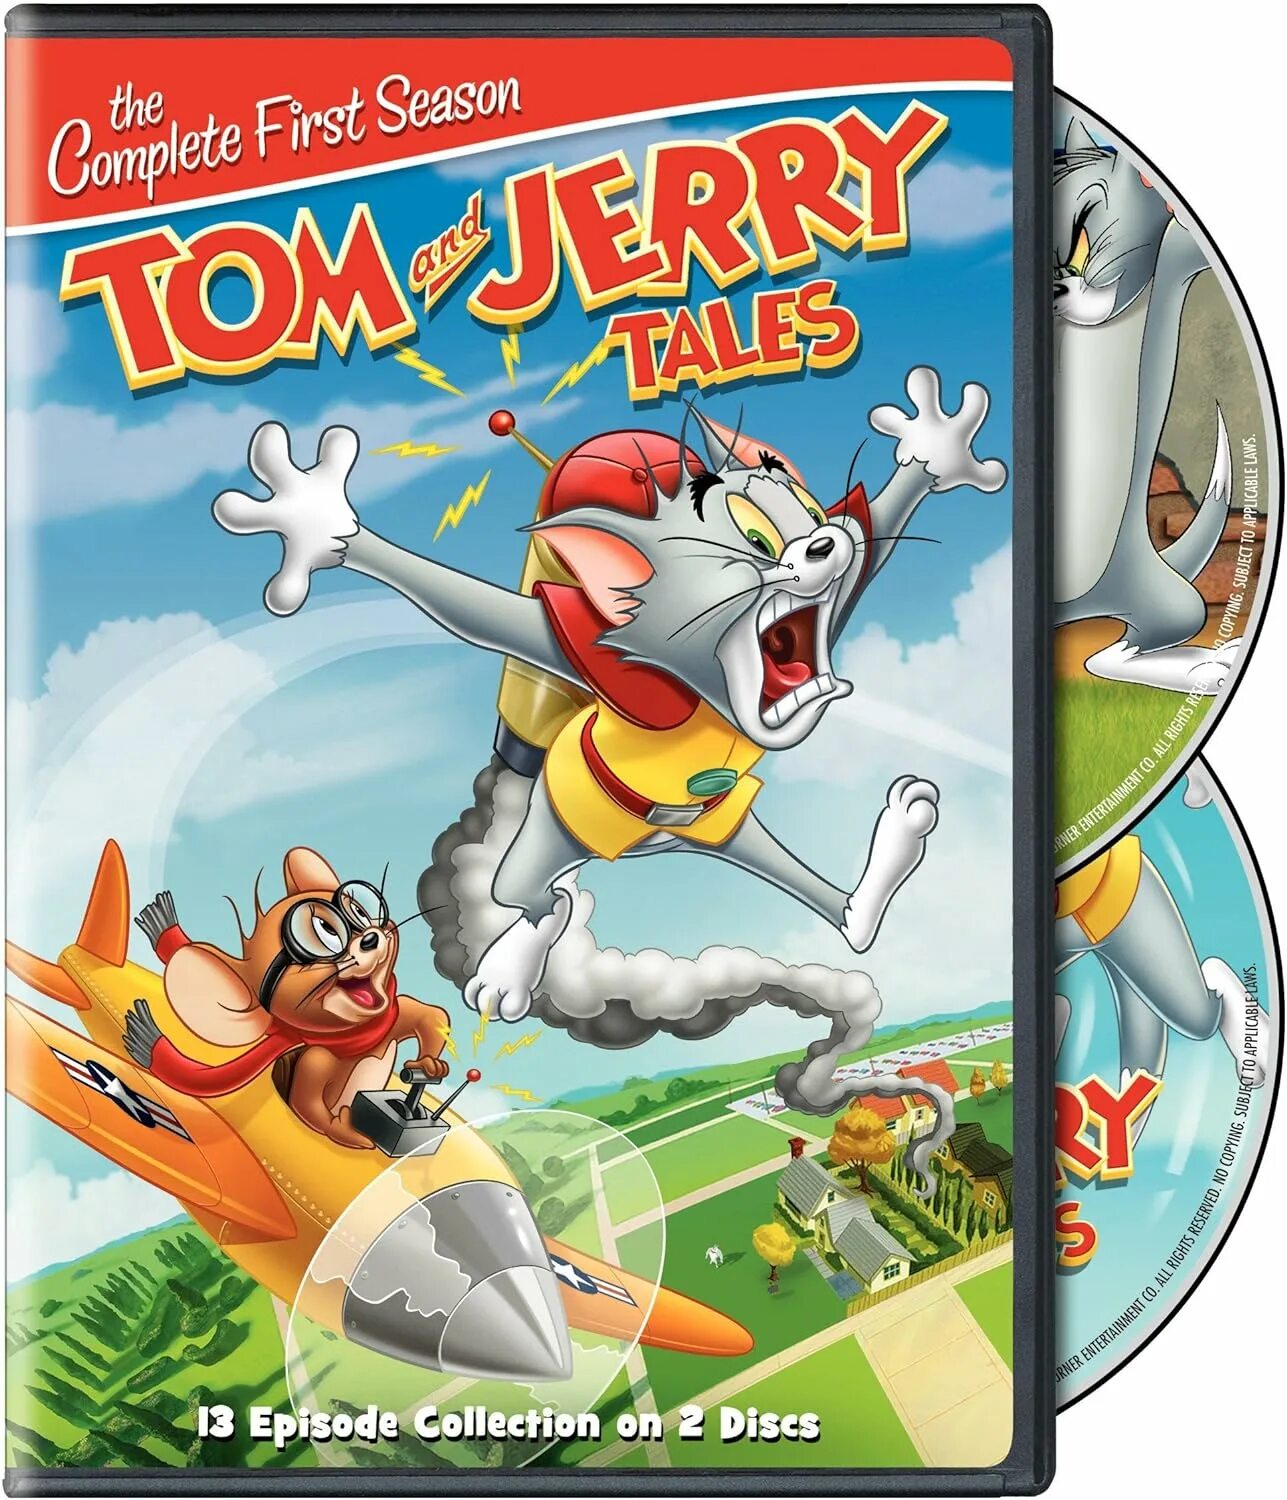 Toms tales. Приключения Тома и Джерри диск. Том и Джерри сказки DVD. Диски с мультиком том и Джерри. Шоу том и Джерри DVD.